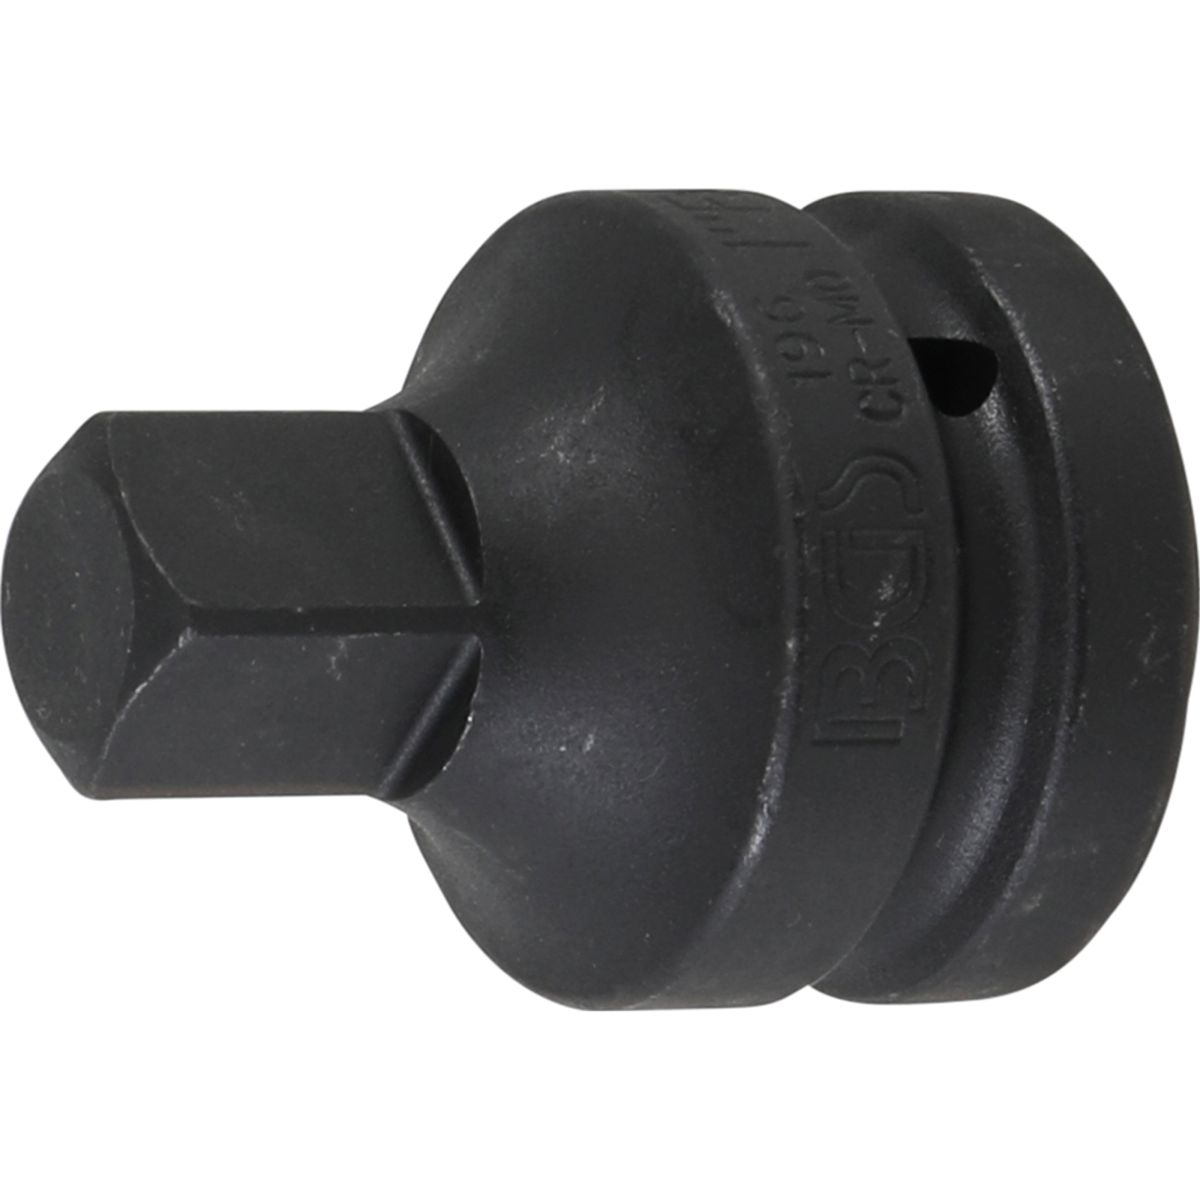 Adaptador de llave de vaso de impacto | cuadrado interior 25 mm (1") - cuadrado exterior 20 mm (3/4")